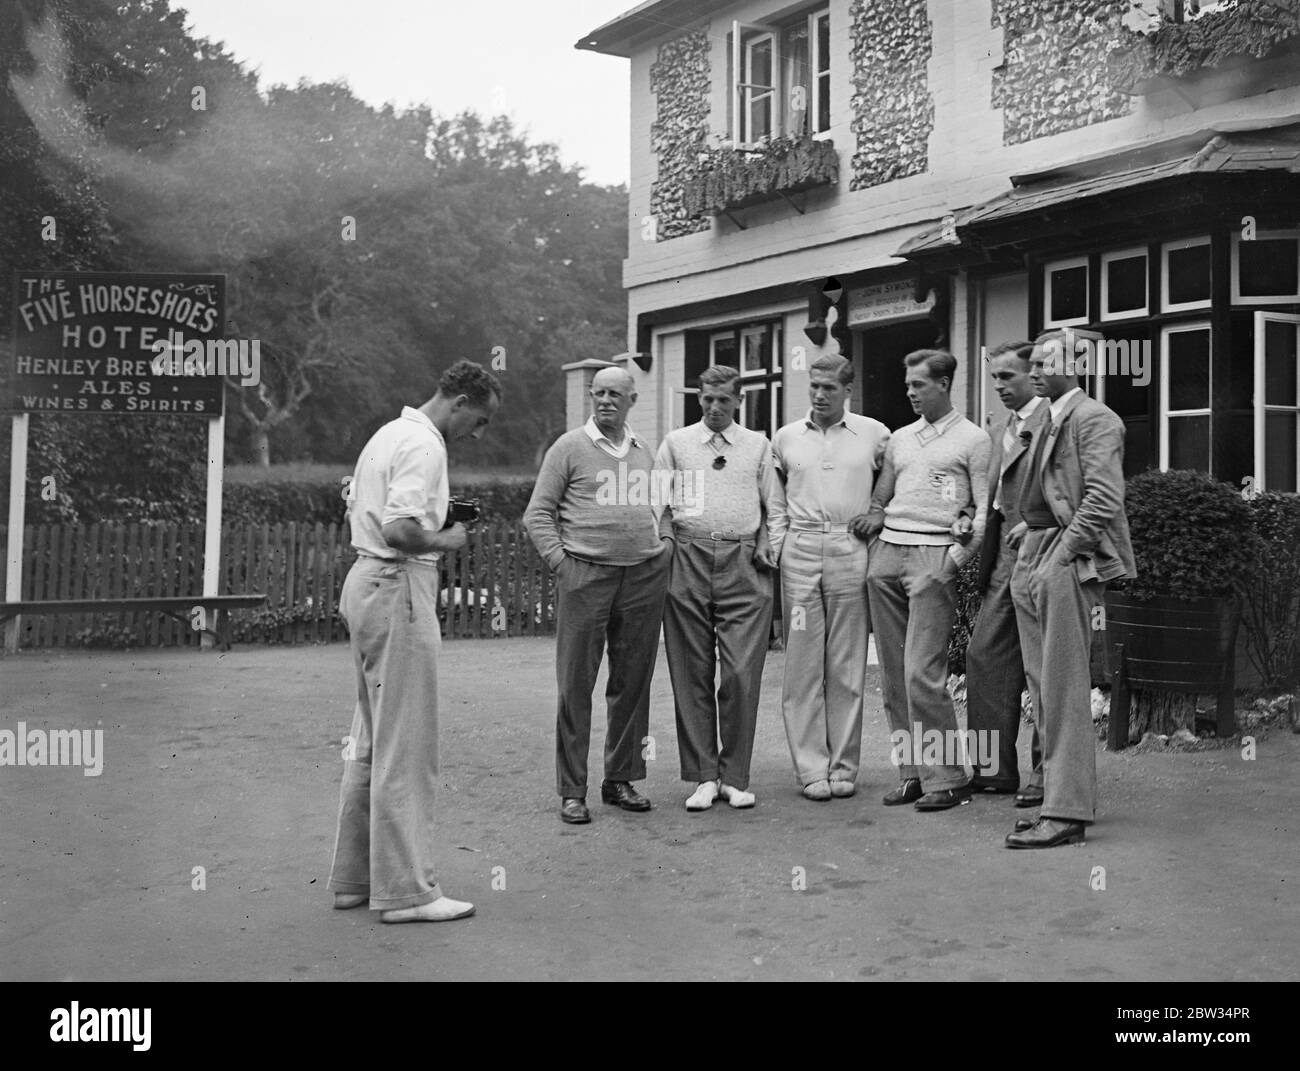 Équipe olympique allemande d'aviron à Henley . L'équipe allemande d'aviron olympique , qui participe à la régate de Henley avant de se rendre à Los Angeles pour participer aux Jeux , est arrivée à Henley . L'équipe allemande de Henley étant photographiée . 24 juin 1932 Banque D'Images